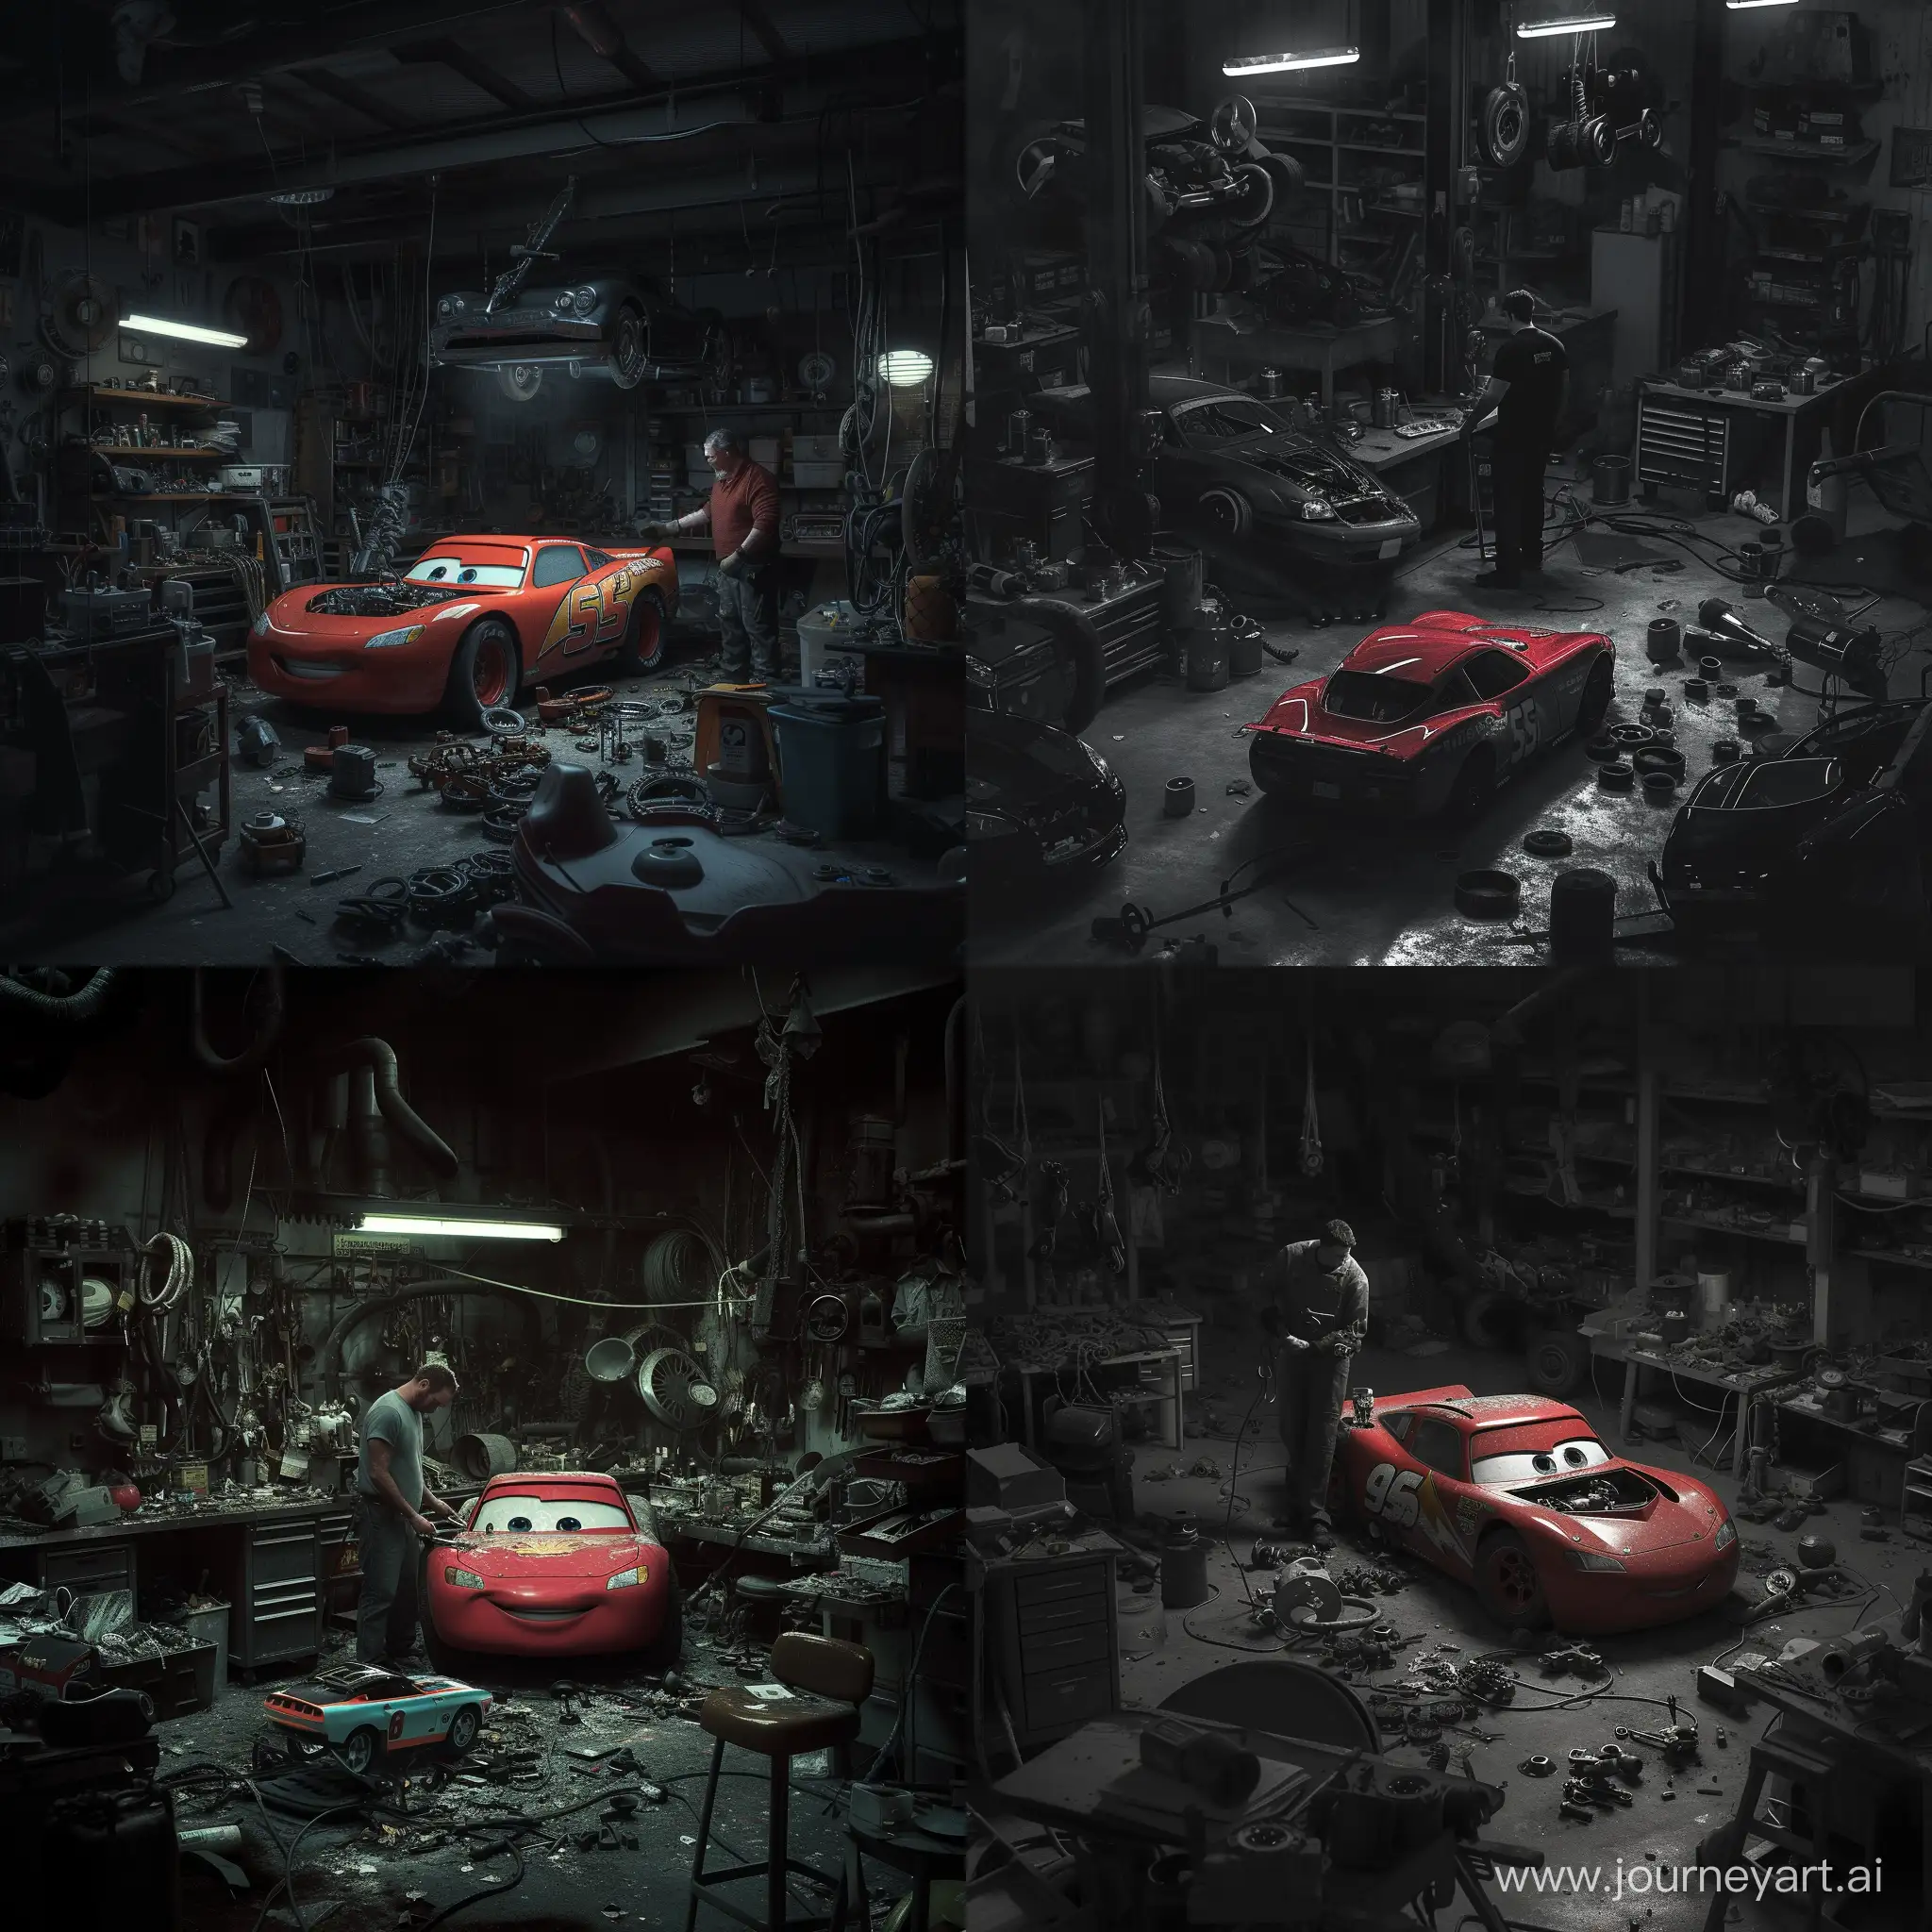 Большой сильный механик стоит в очень темном гараже ремонтируя Lighting McQueen, по всюду разбросаны различные детали. Фотография в темных тонах